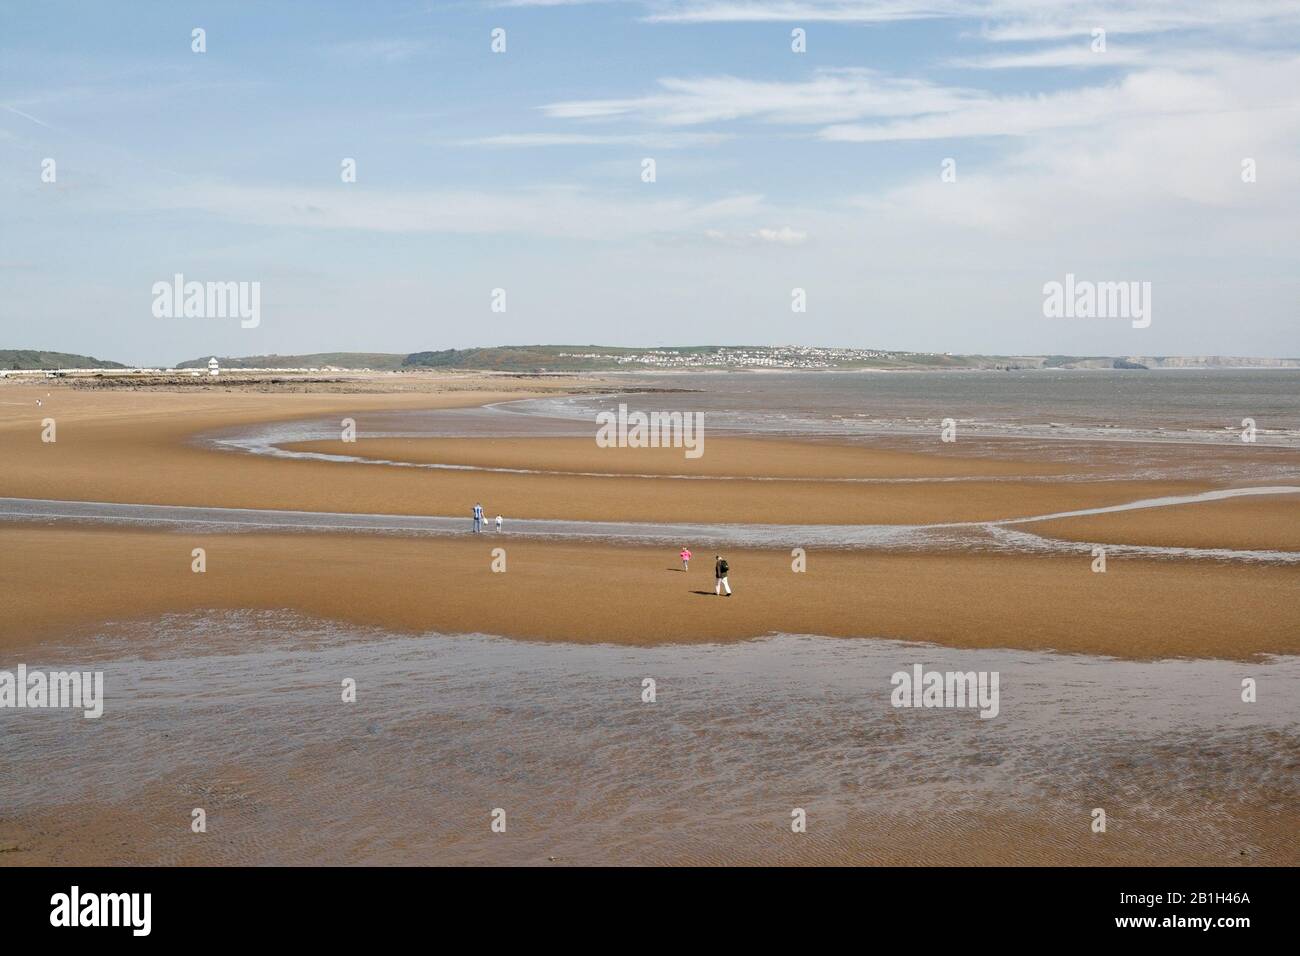 Der Strand an Sandy Bay Porthcawl Wales UK, walisische Küste. Malerischer Blick auf den Sandstrand und die britische Küste Stockfoto